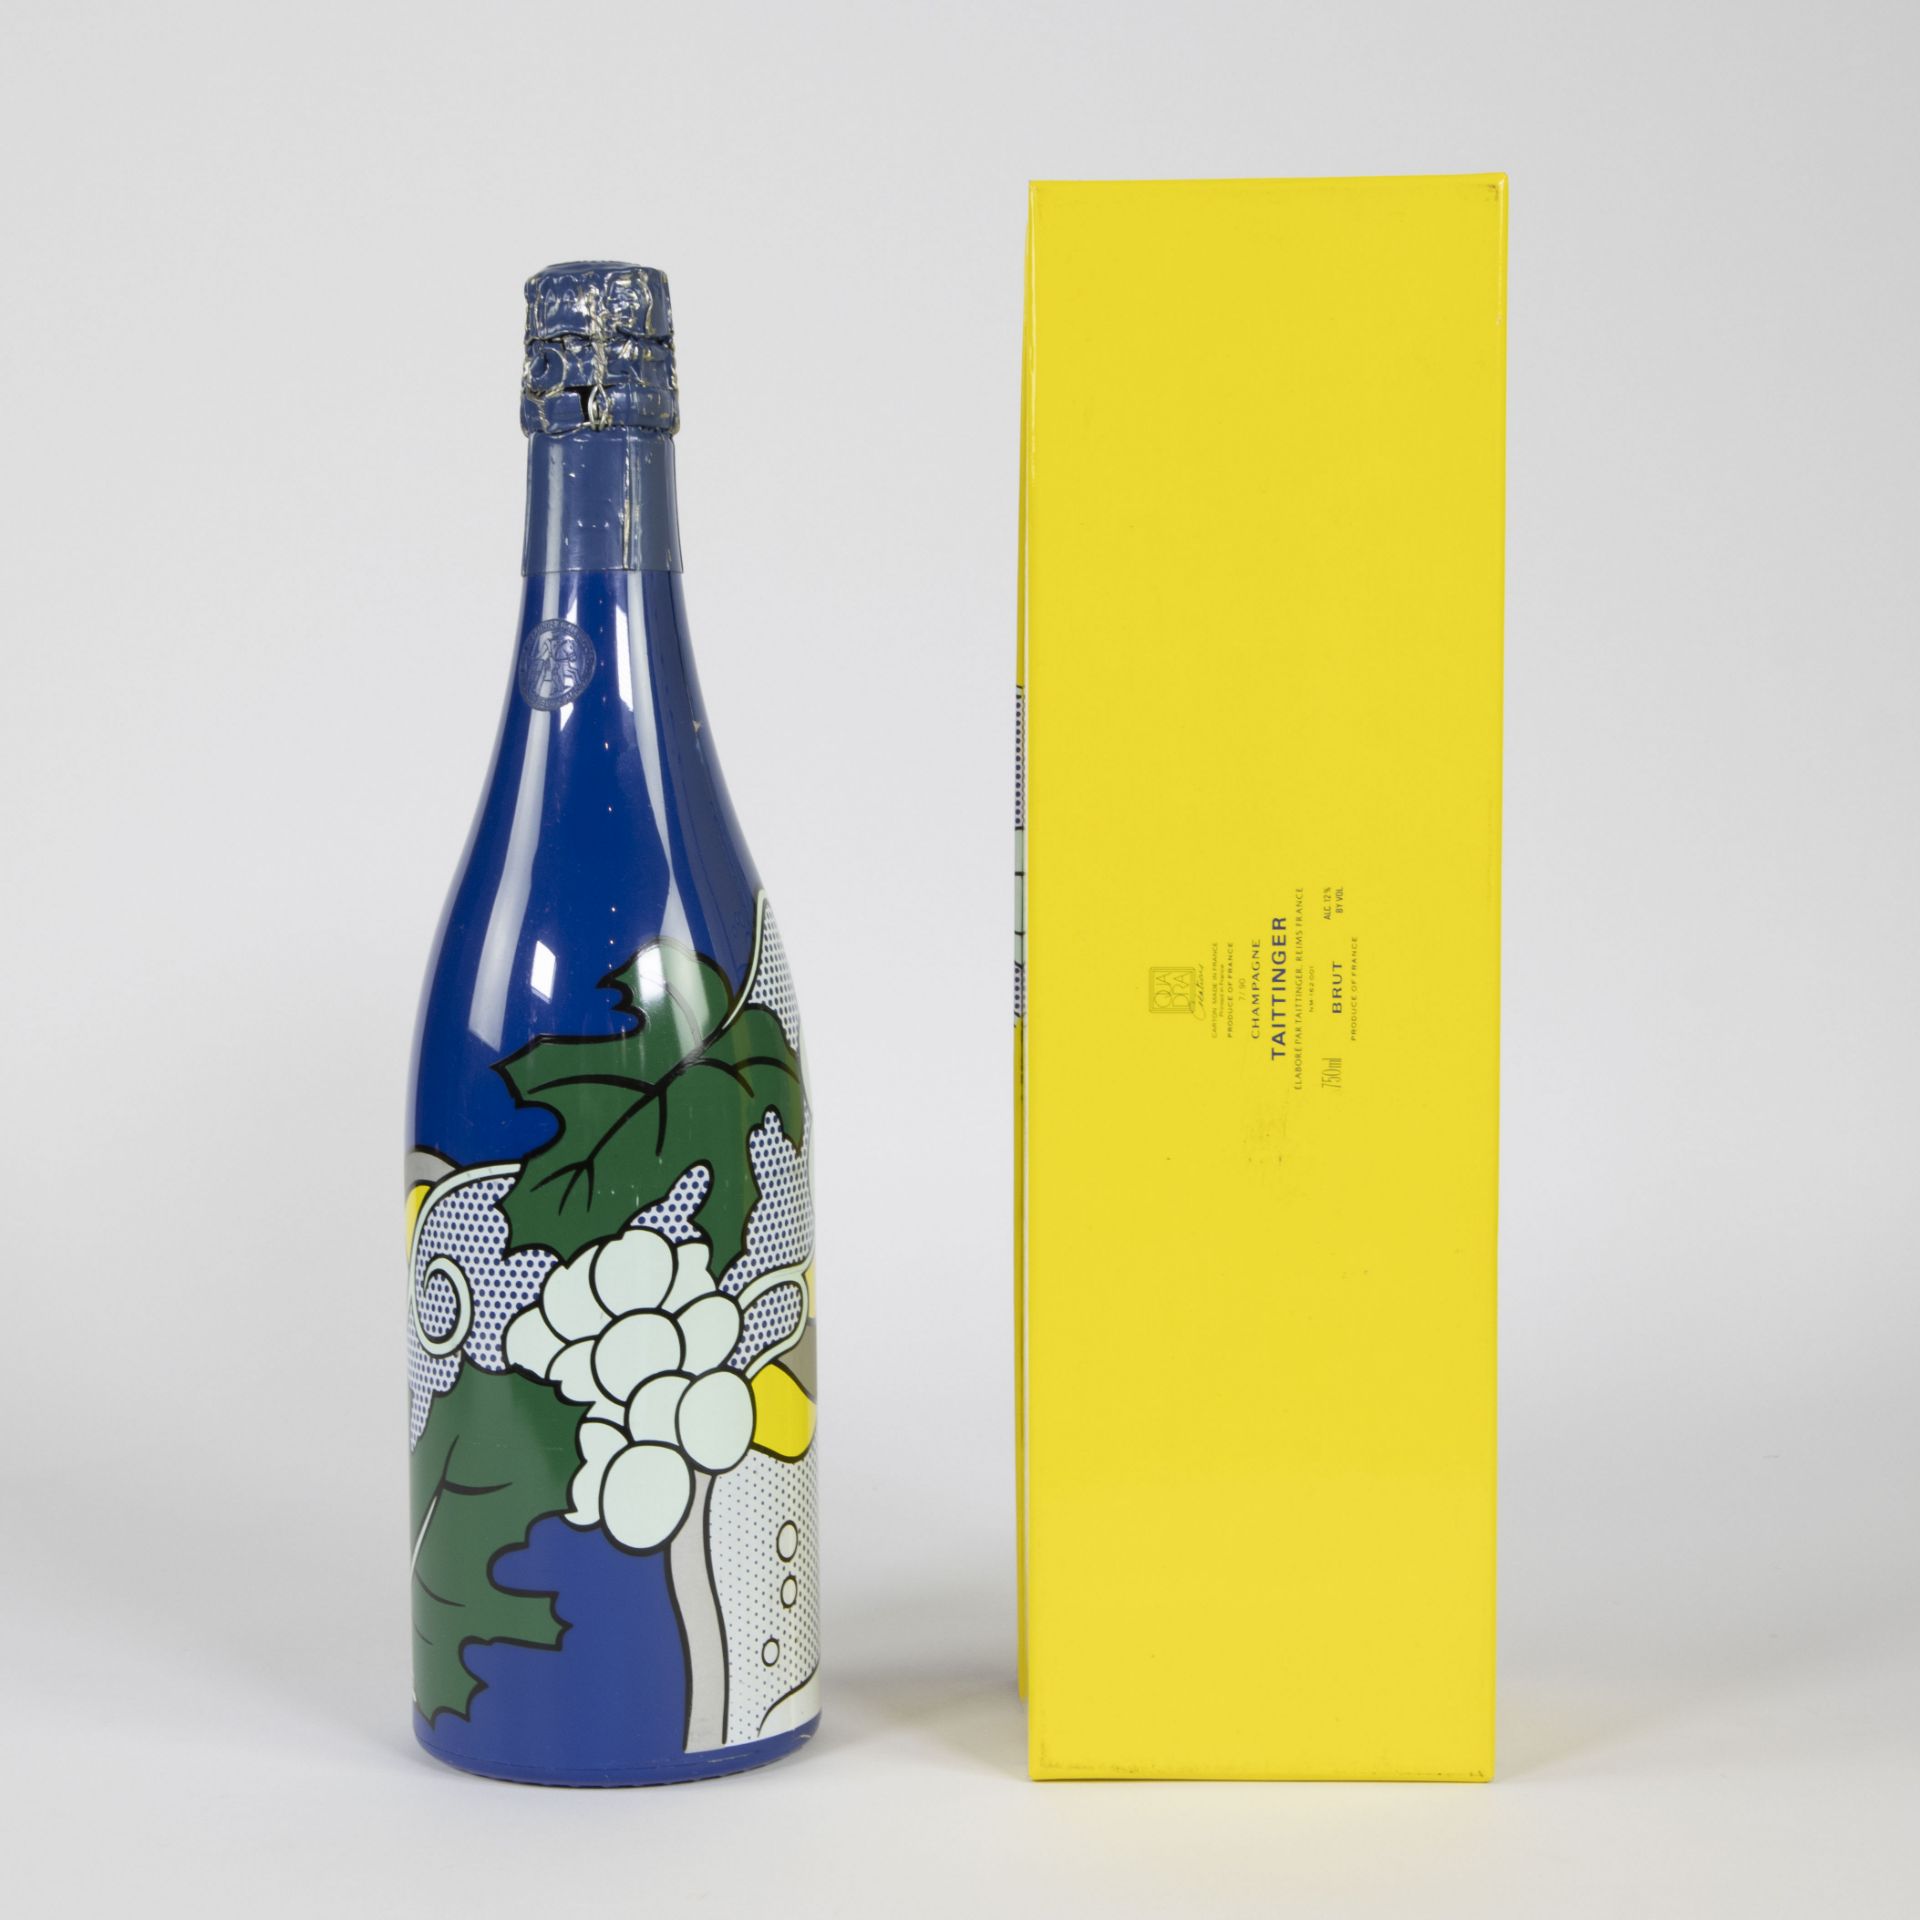 Taittinger collection Lichtenstein champagne, France - Bild 3 aus 4